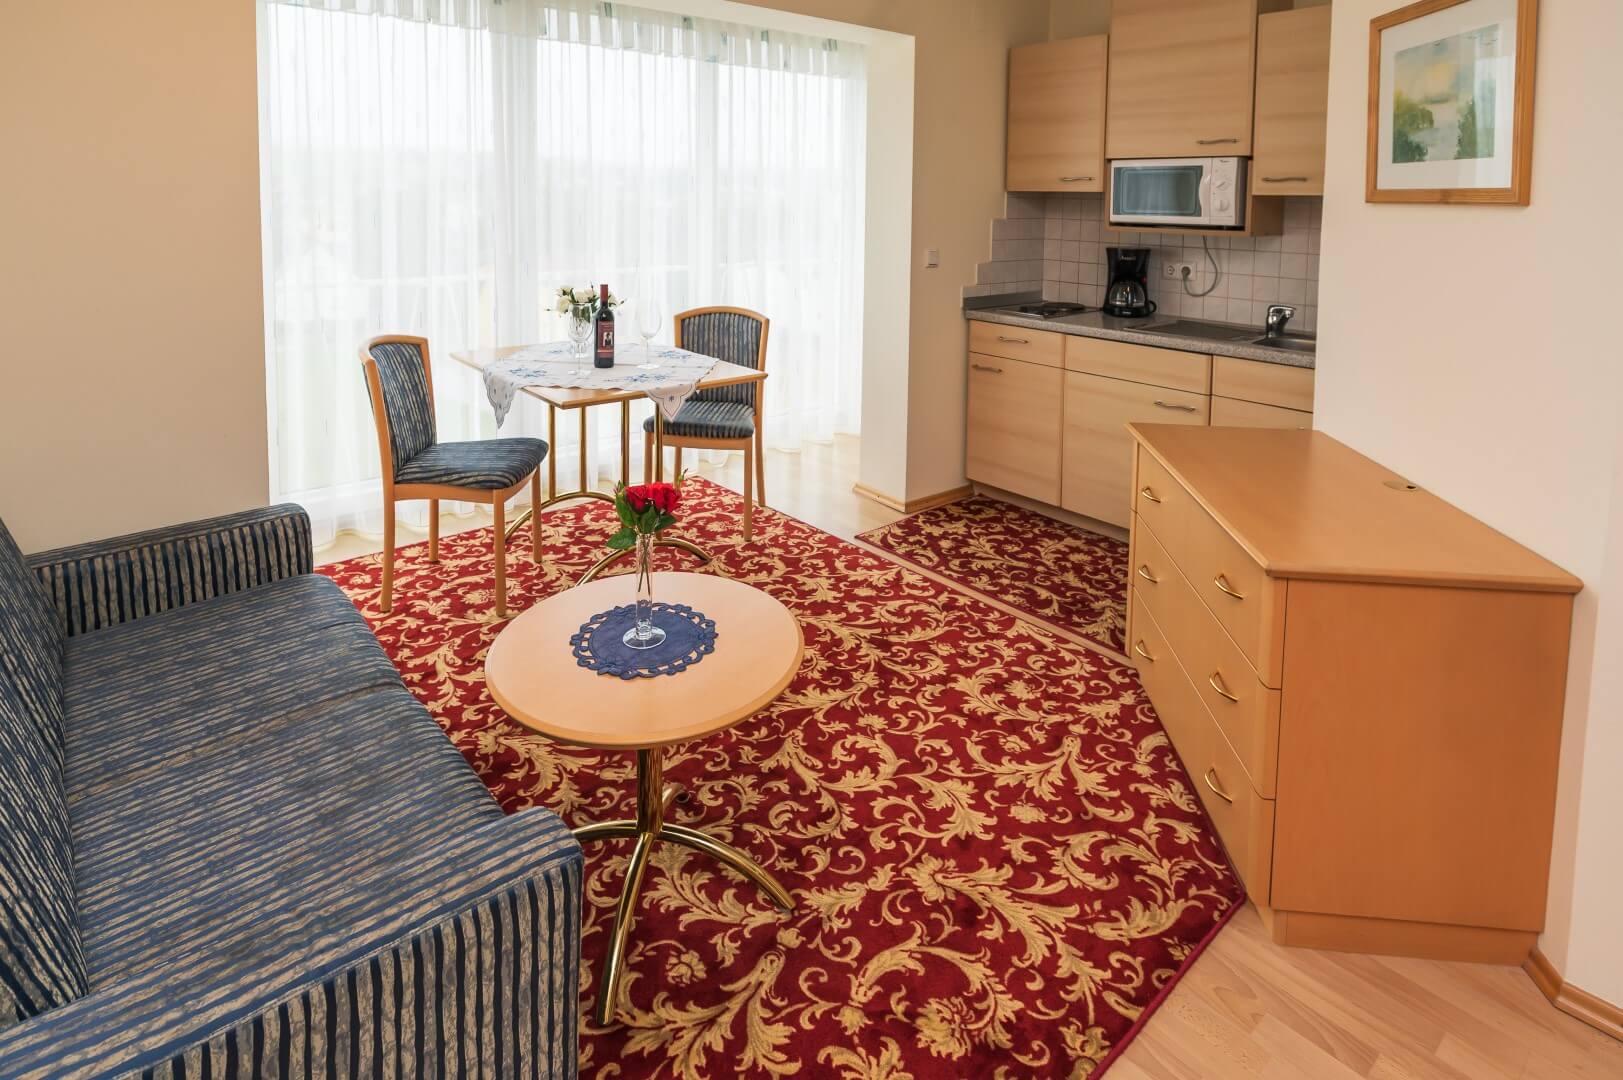 Einblick in ein Apartment mit integrierter Küche, einem Esstisch und einer geöffneten Tür, die zum Badezimmer führt, im Gasthaus Treiber.